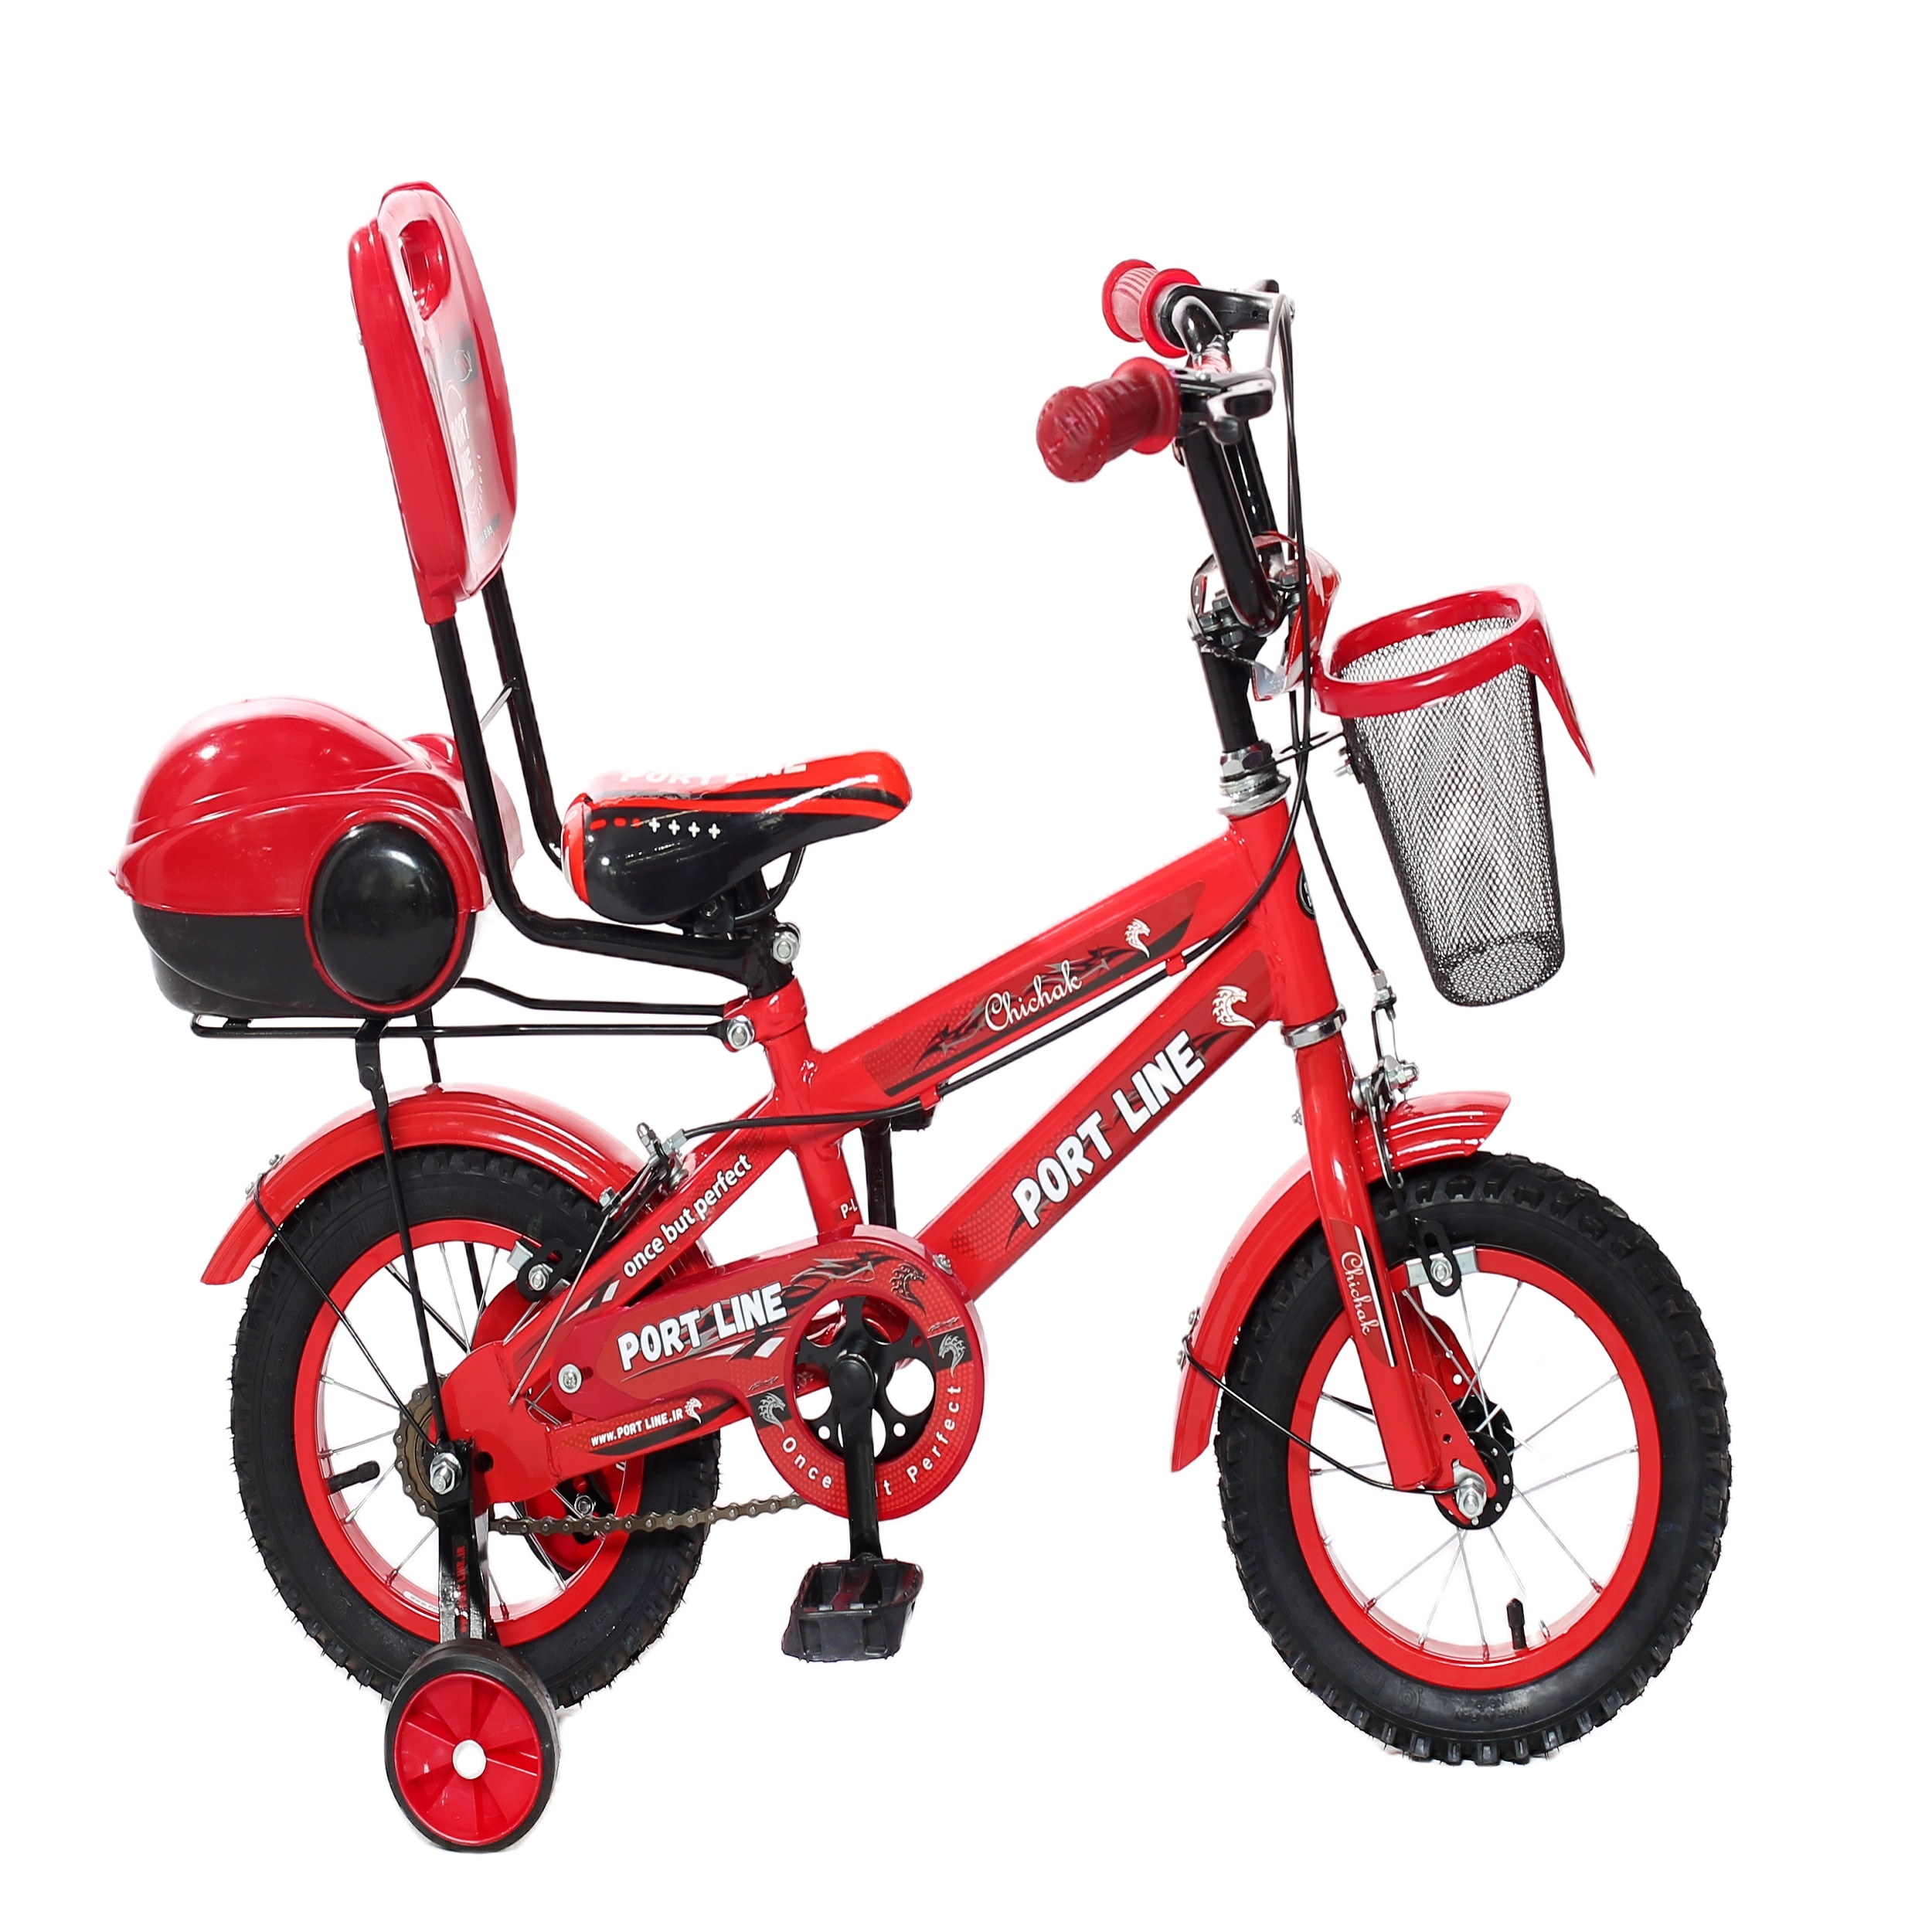 نکته خرید - قیمت روز دوچرخه شهری پورت لاین مدل چیچک سایز 12 قرمز خرید